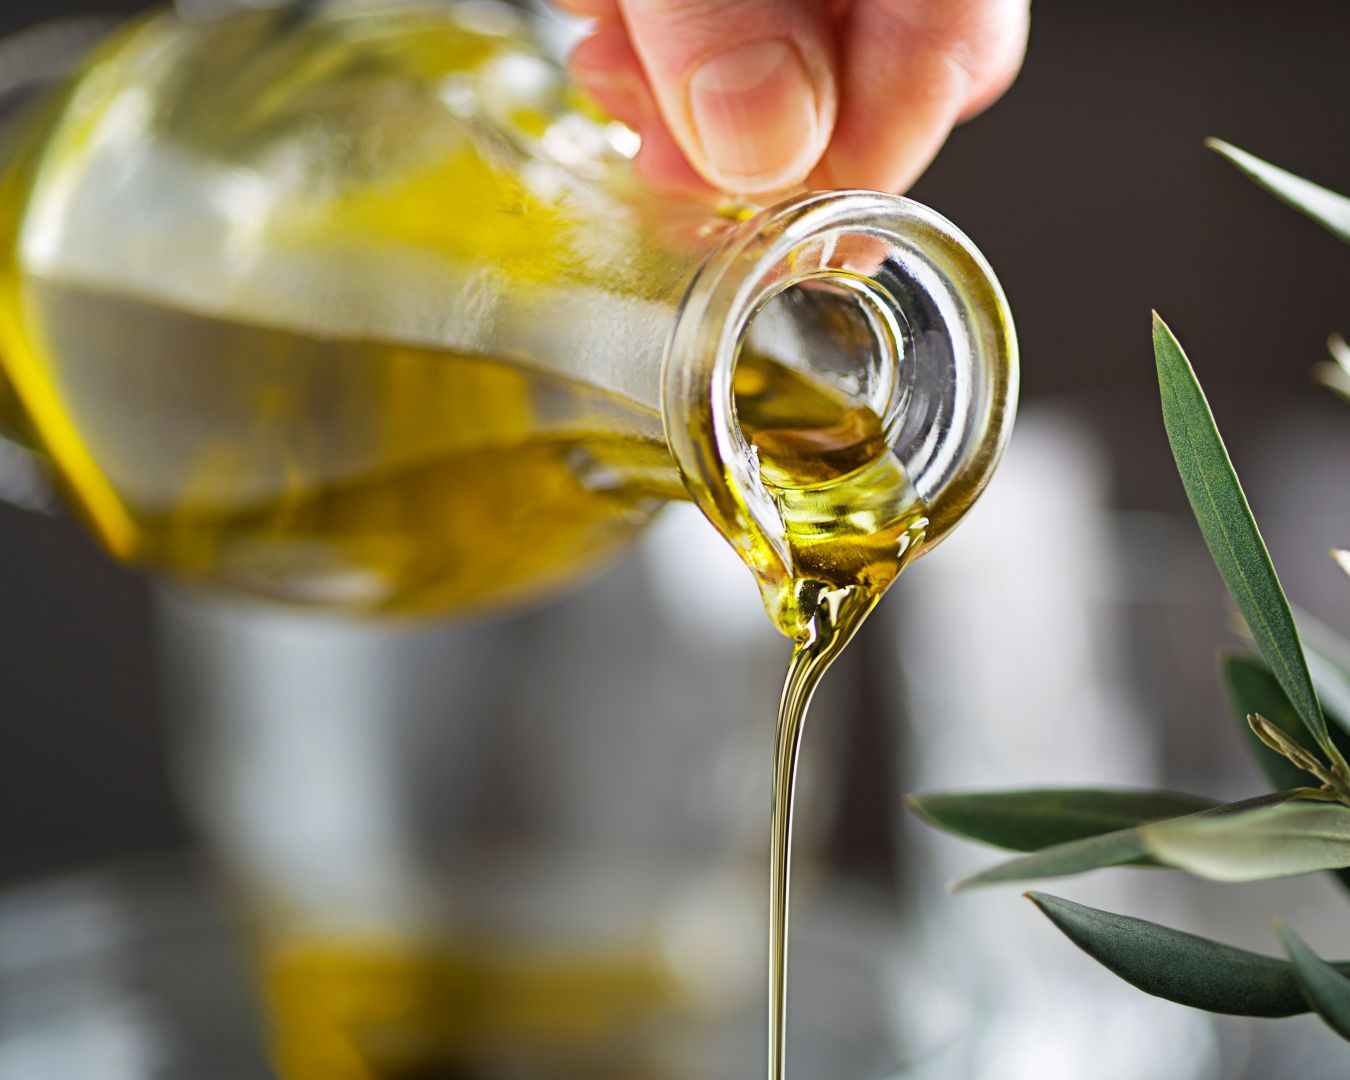 Impregnamos las verduras con aceite de oliva